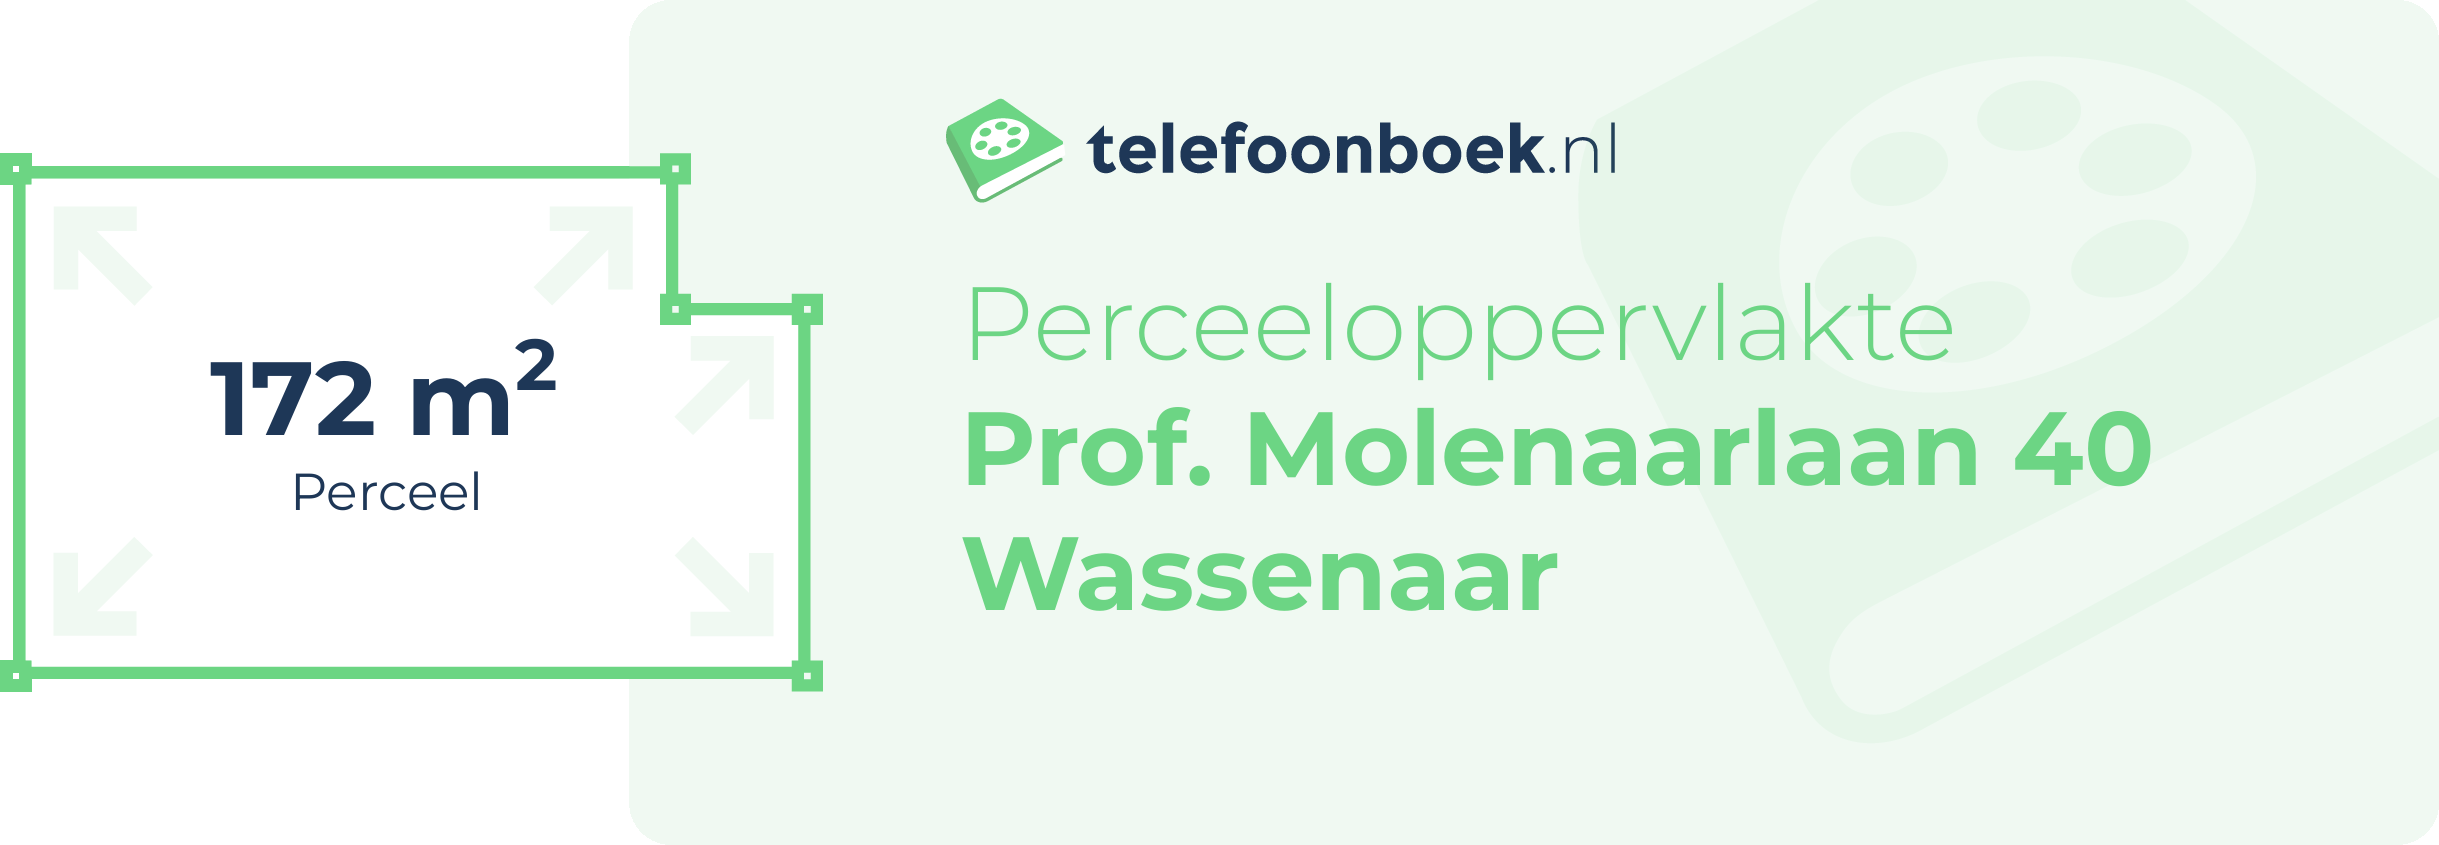 Perceeloppervlakte Prof. Molenaarlaan 40 Wassenaar